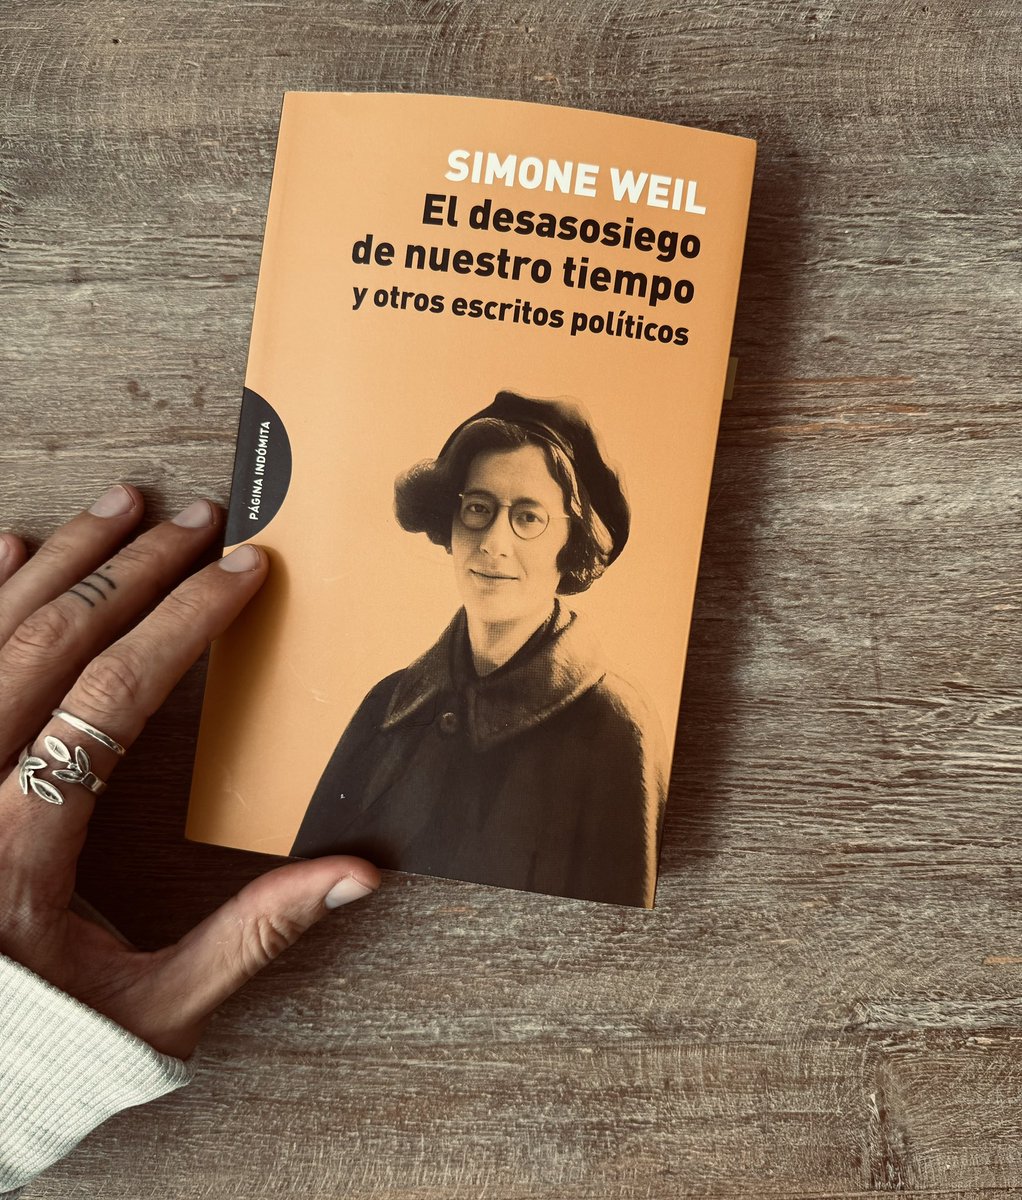 Leer a Simone Weil es como quitarse una venda de los ojos. “Ya no se presta atención al esfuerzo por discernir el bien, la justicia y la verdad. En casi todas partes la operación de tomar partido, de posicionarse a favor o en contra, ha sustituido a la obligación de pensar”.